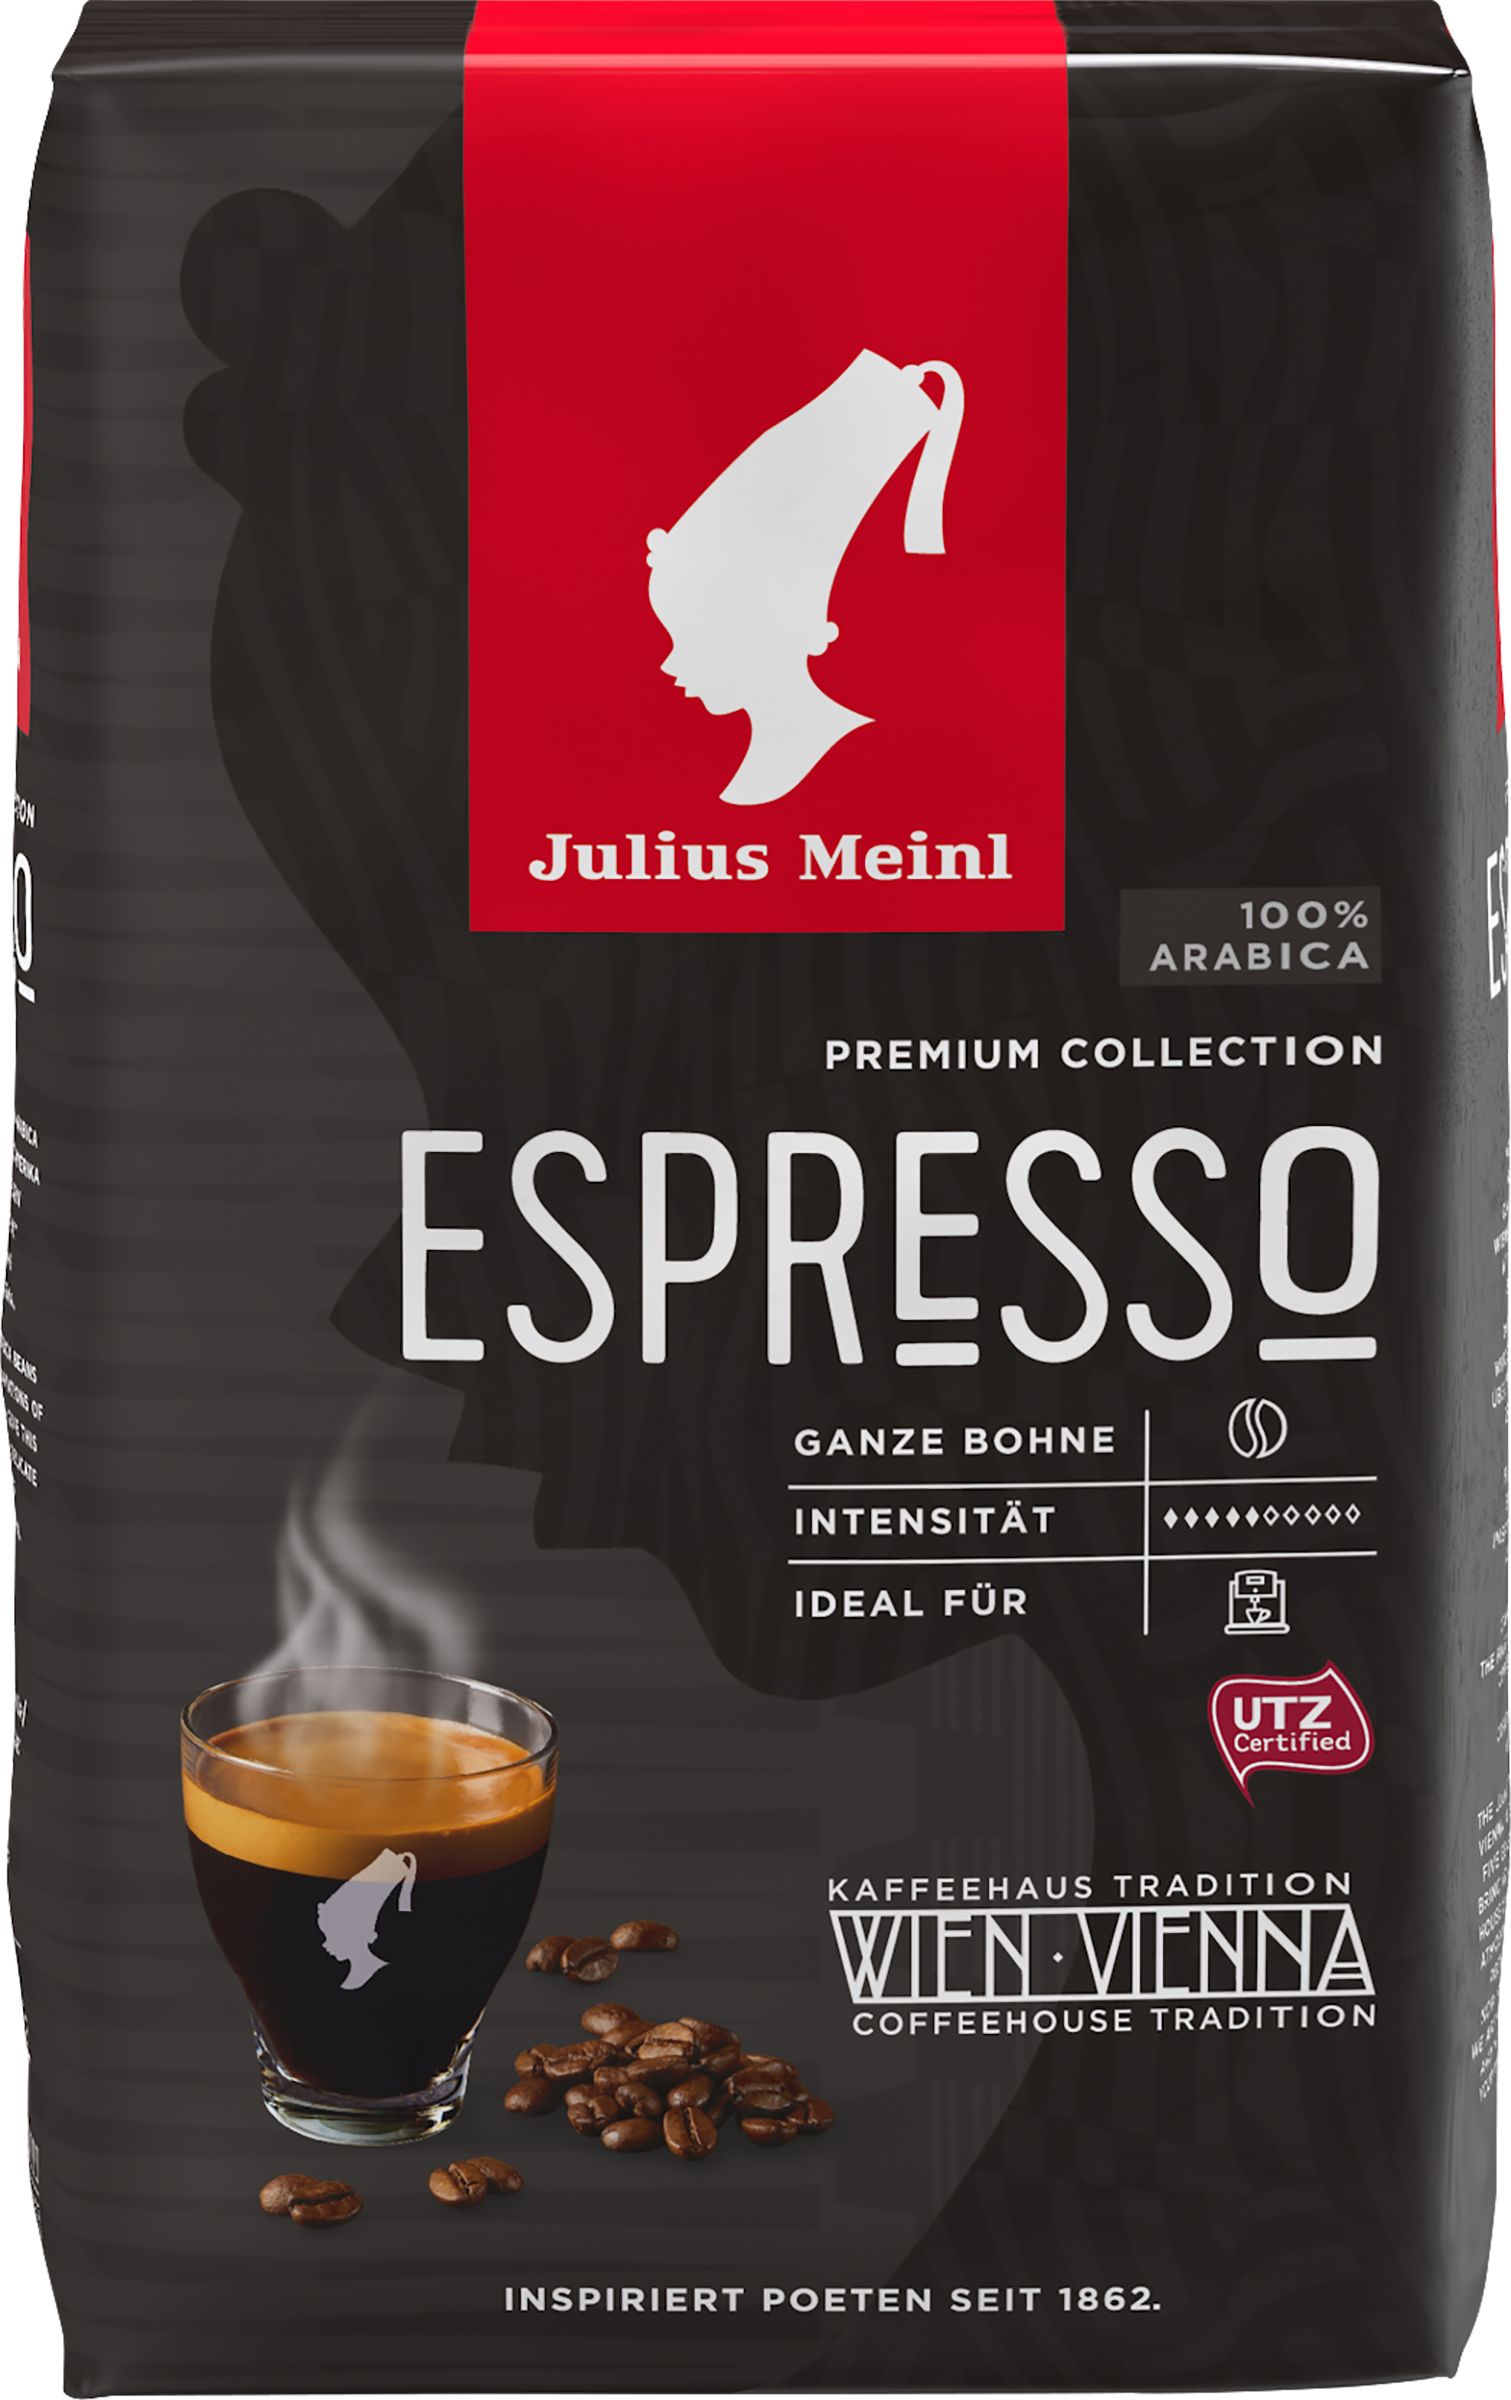 Джулиус майнл. Кофе Julius Meinl President в зернах 500 г. Julius Meinl Espresso Premium. Julius Meinl Espresso Premium collection. Кофе в зернах Julius Meinl Грандэ Espresso.